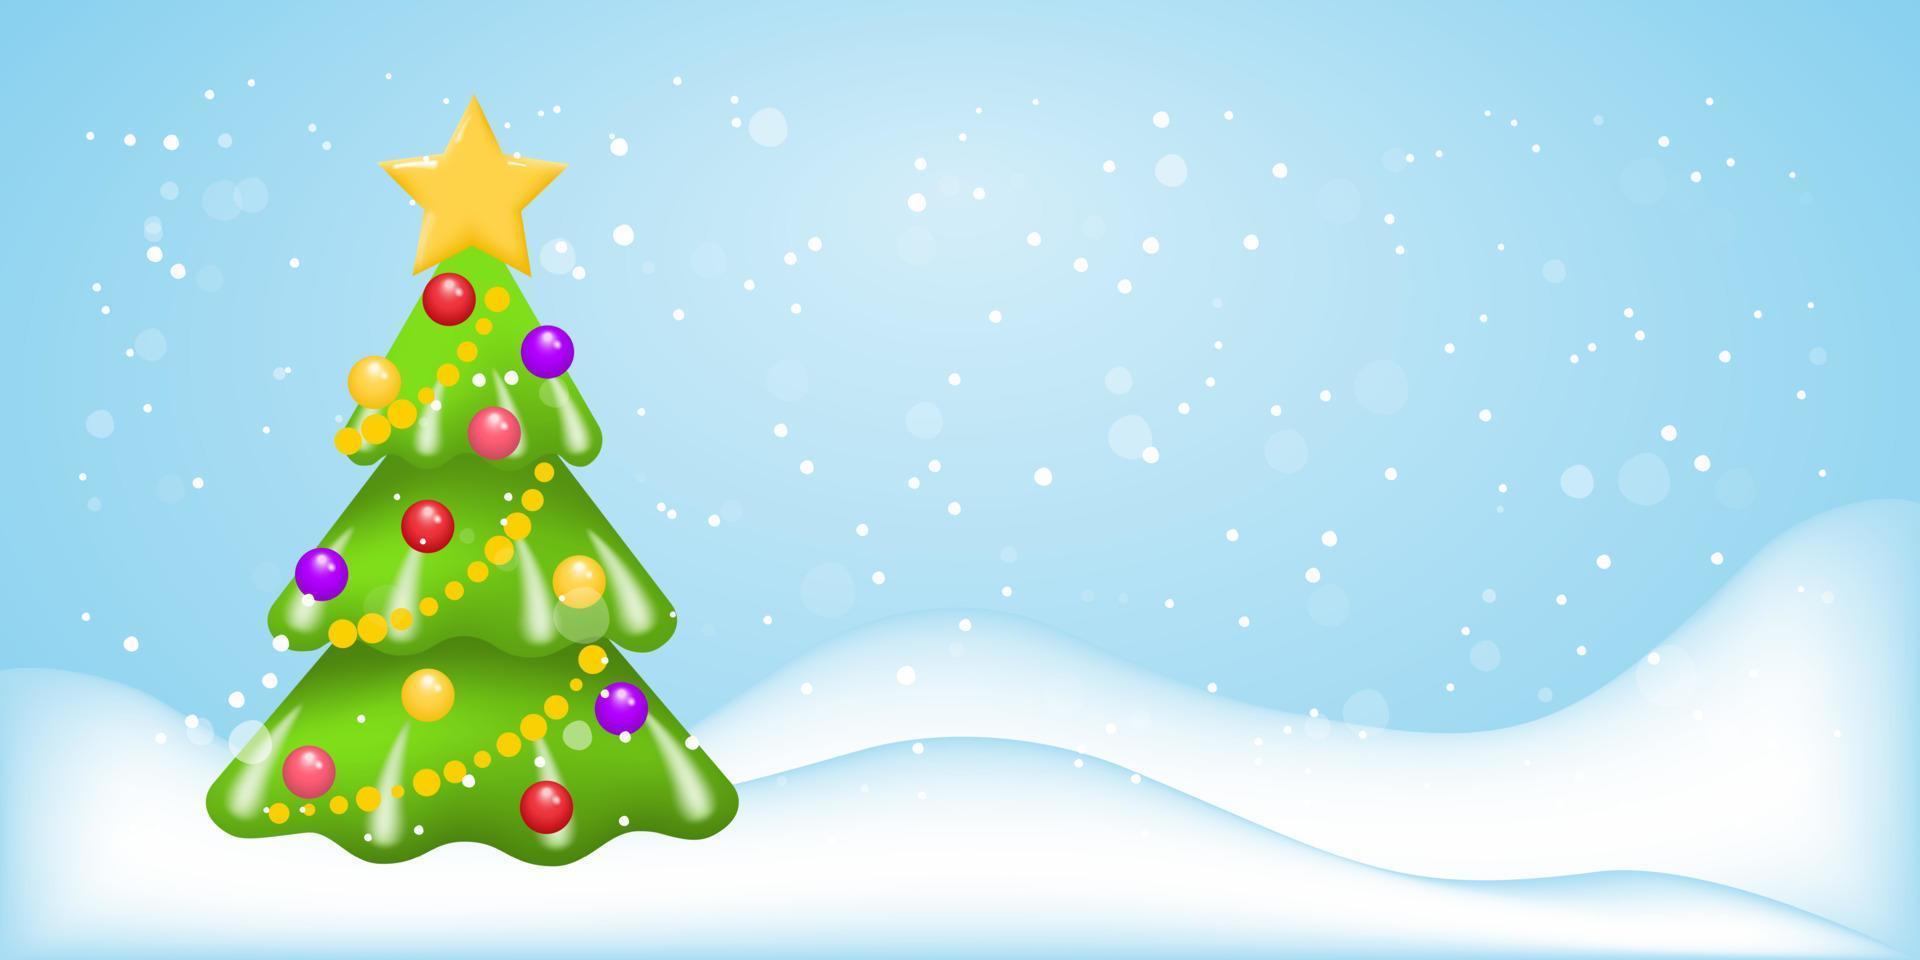 árbol de navidad con nieve. fondo festivo de invierno con un árbol de navidad decorado y ventisqueros. plantilla vectorial para un feliz año nuevo o una pancarta, afiche o postal de felicitación navideña. vector. vector